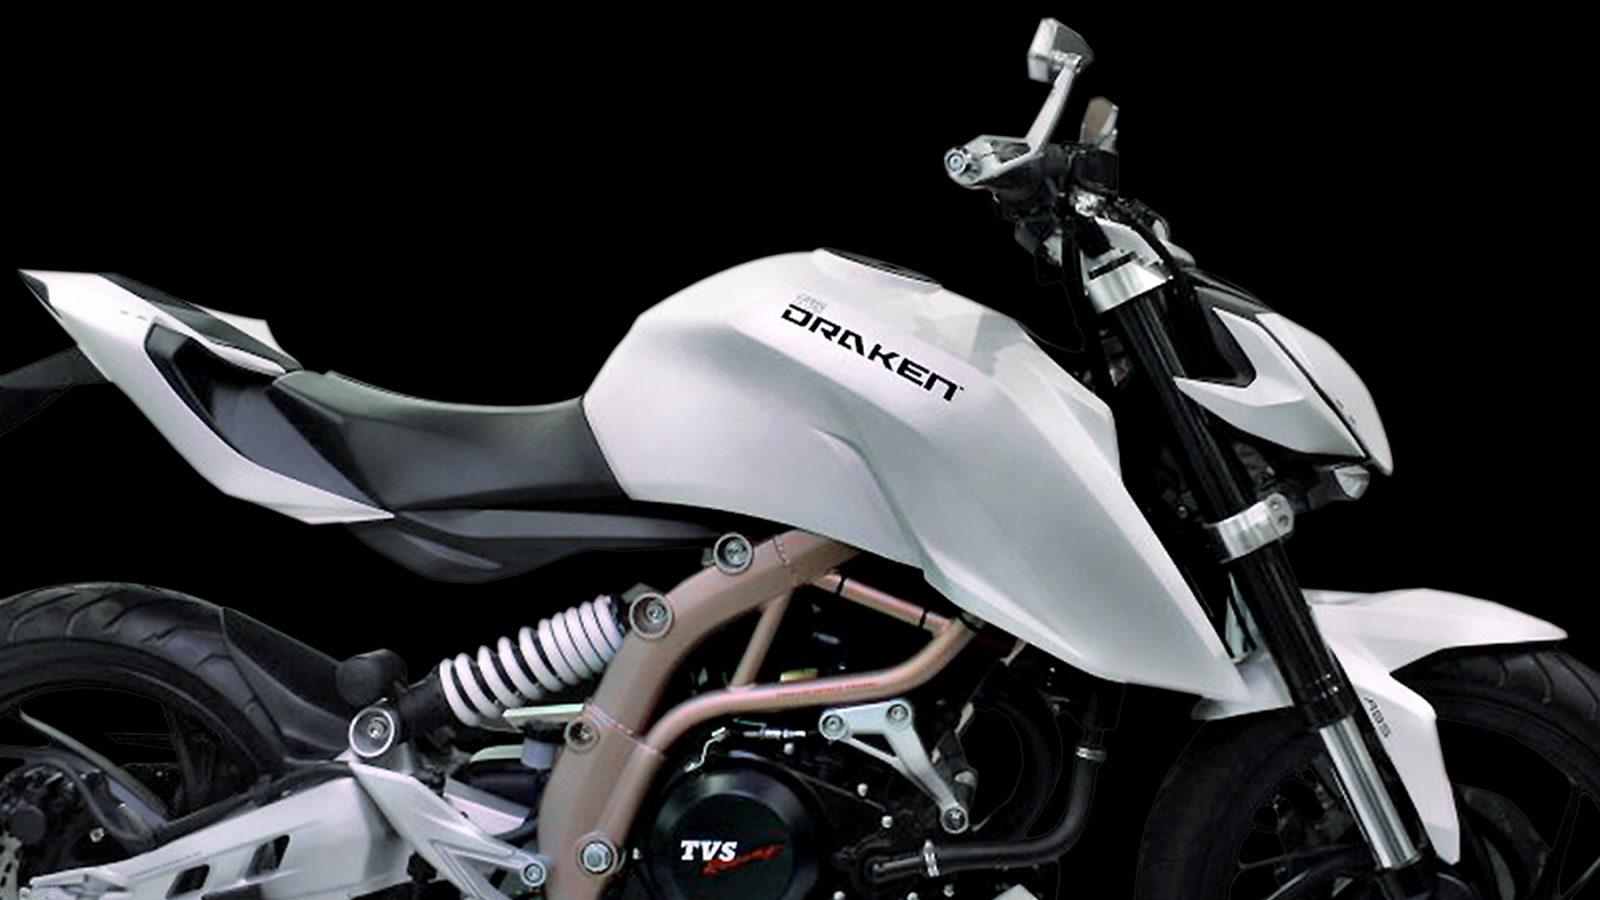 TVS Draken Concept Motorcycle